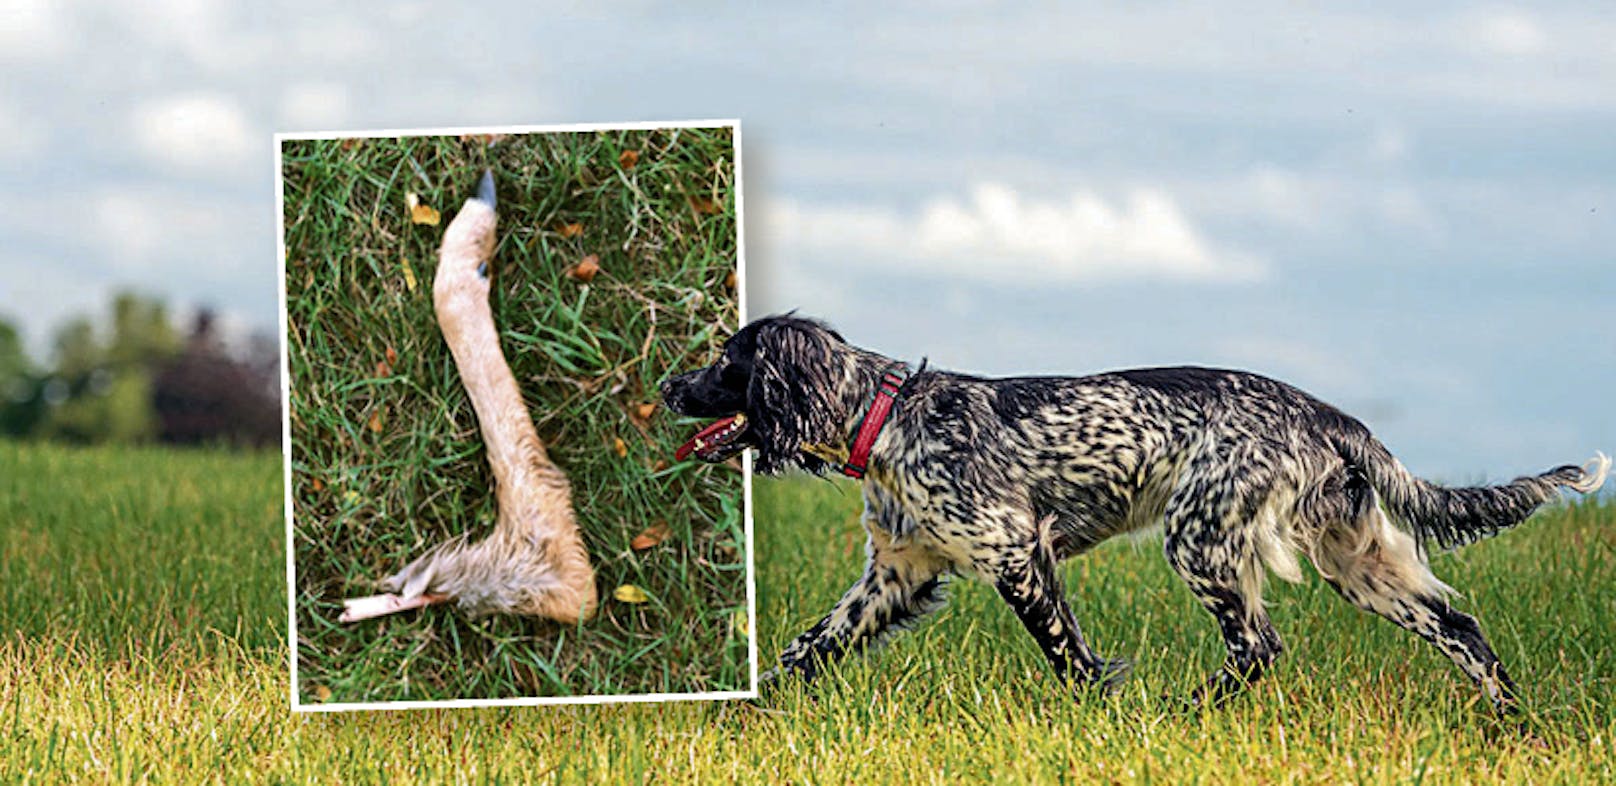 Bei der Kleingartensidlung Sulzwiese beim Wiener Prater fand eine Spaziergeherin ein abgebissenes Rehbein. Ein Hund dürfte der Täter sein.